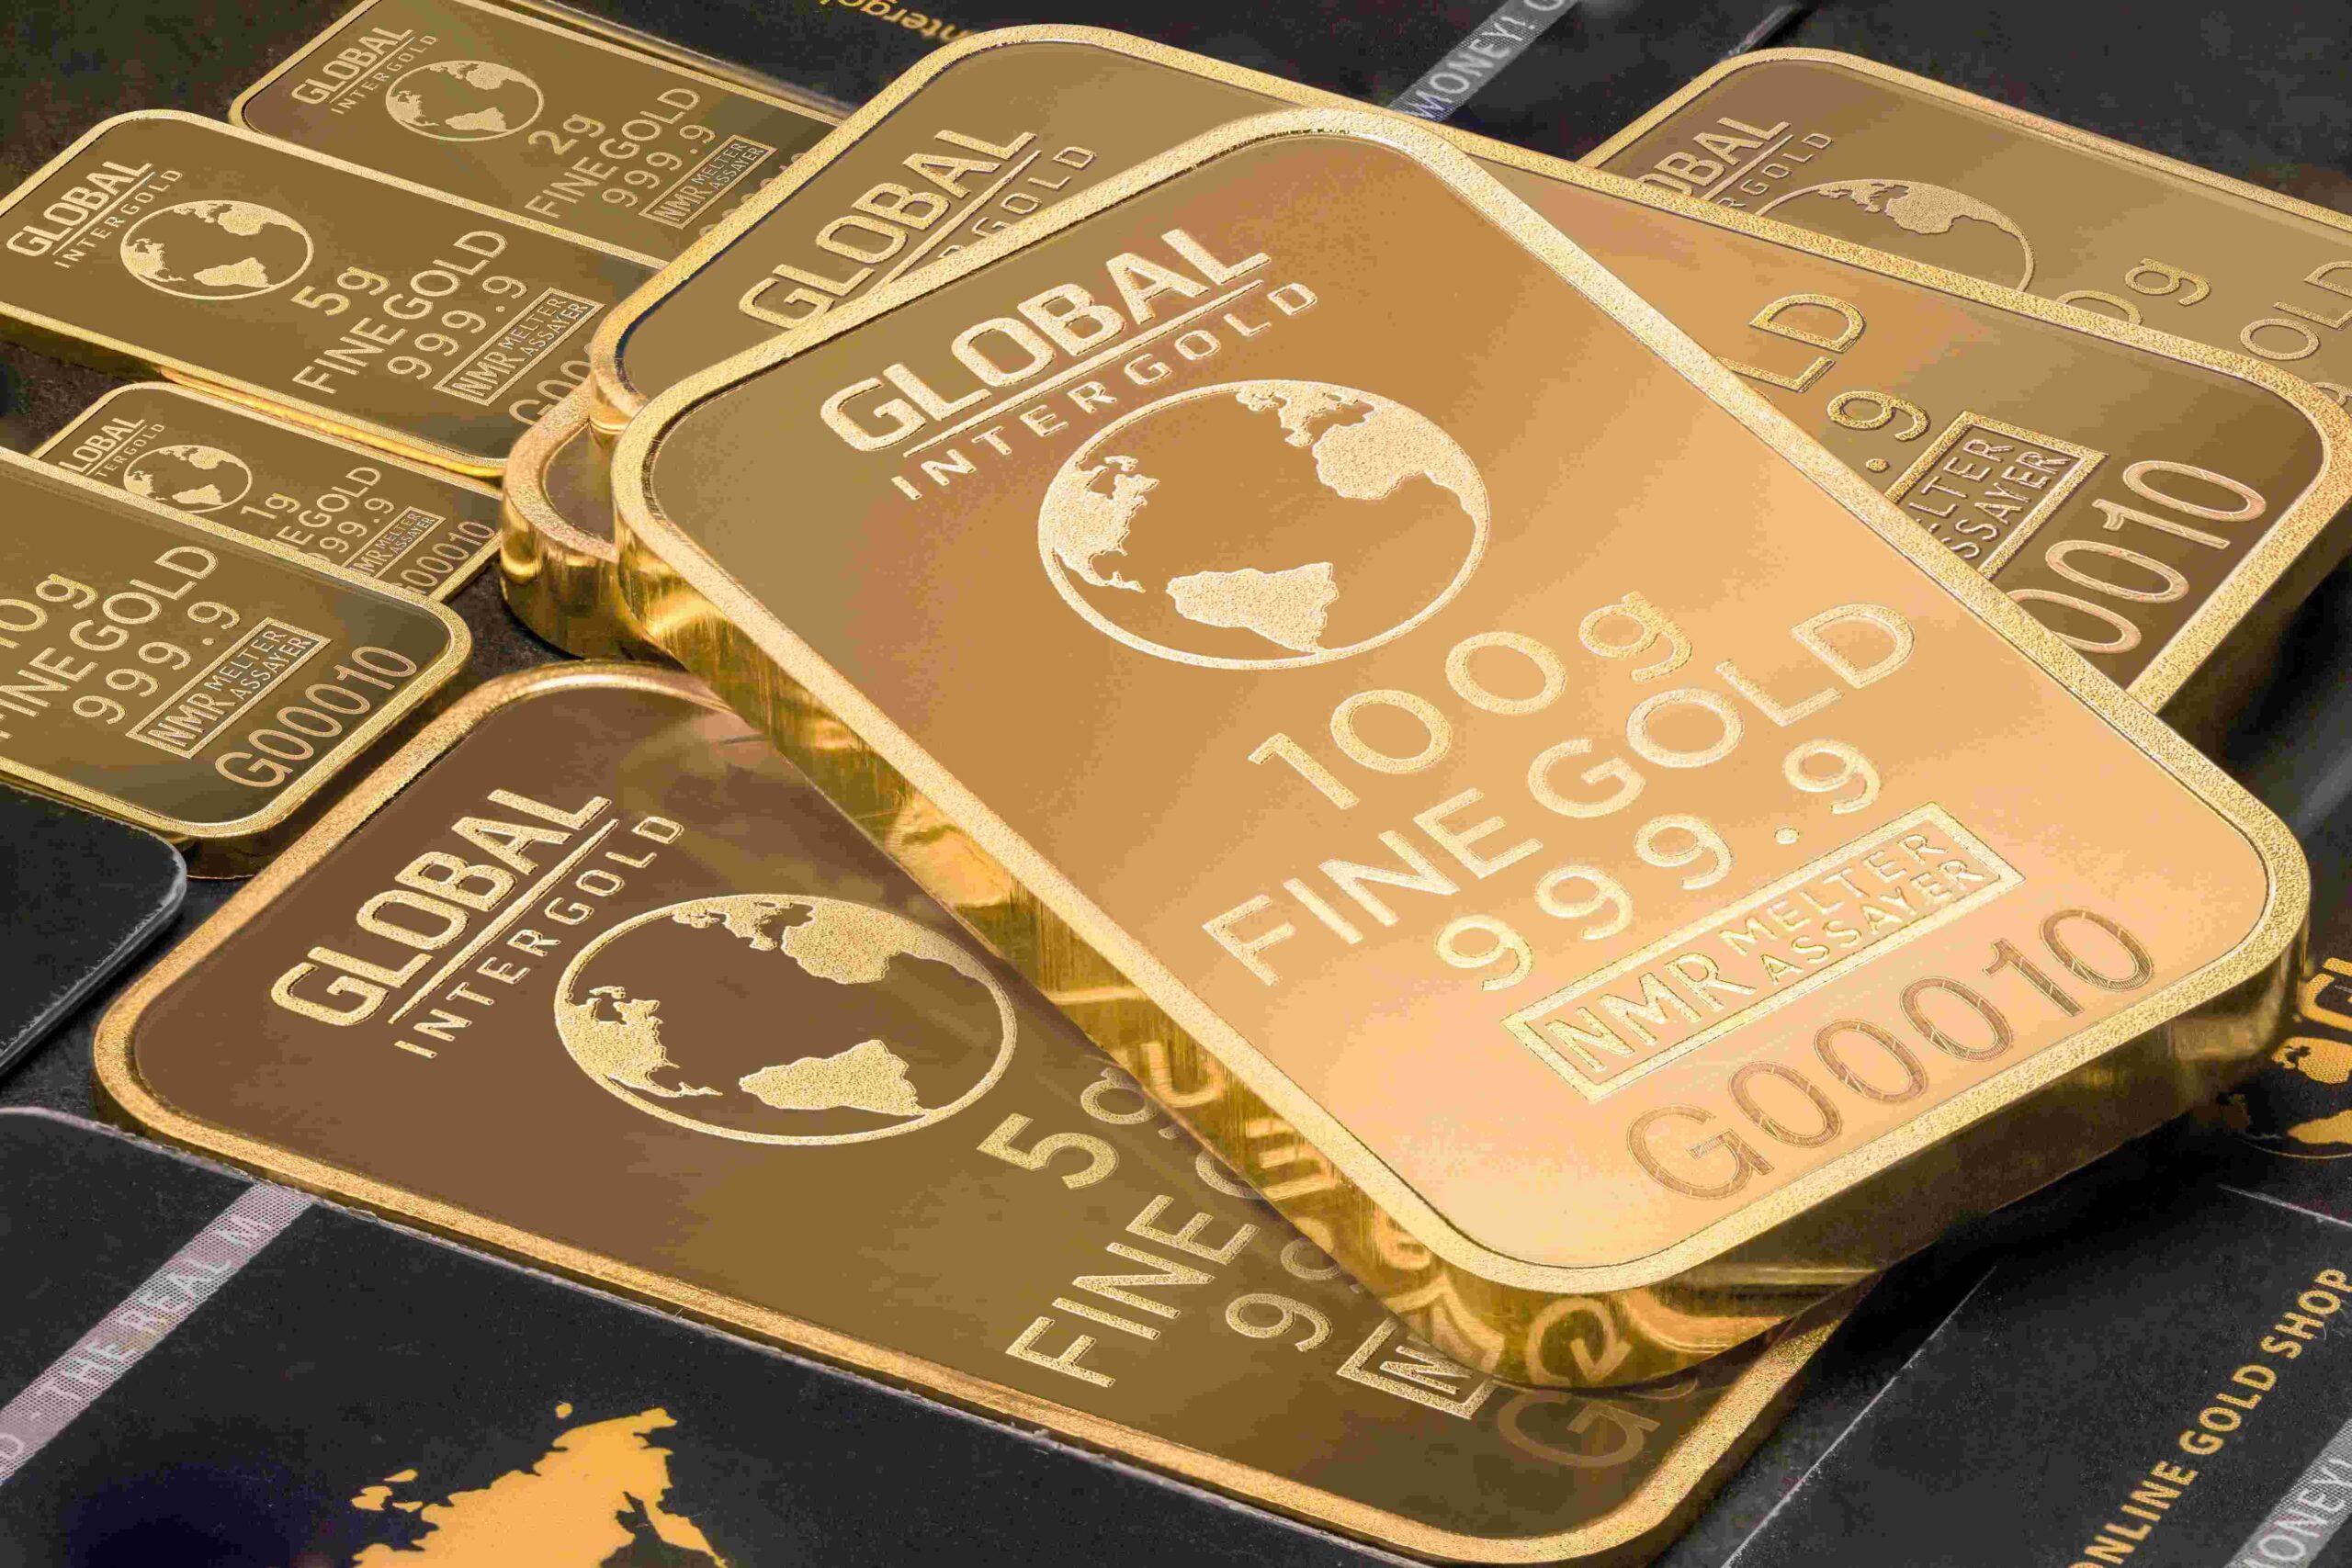 सॉवरेन गोल्ड बॉन्ड (Sovereign Gold Bond) क्या है ? गोल्ड बॉन्ड मे निवेश करने के फायदे।